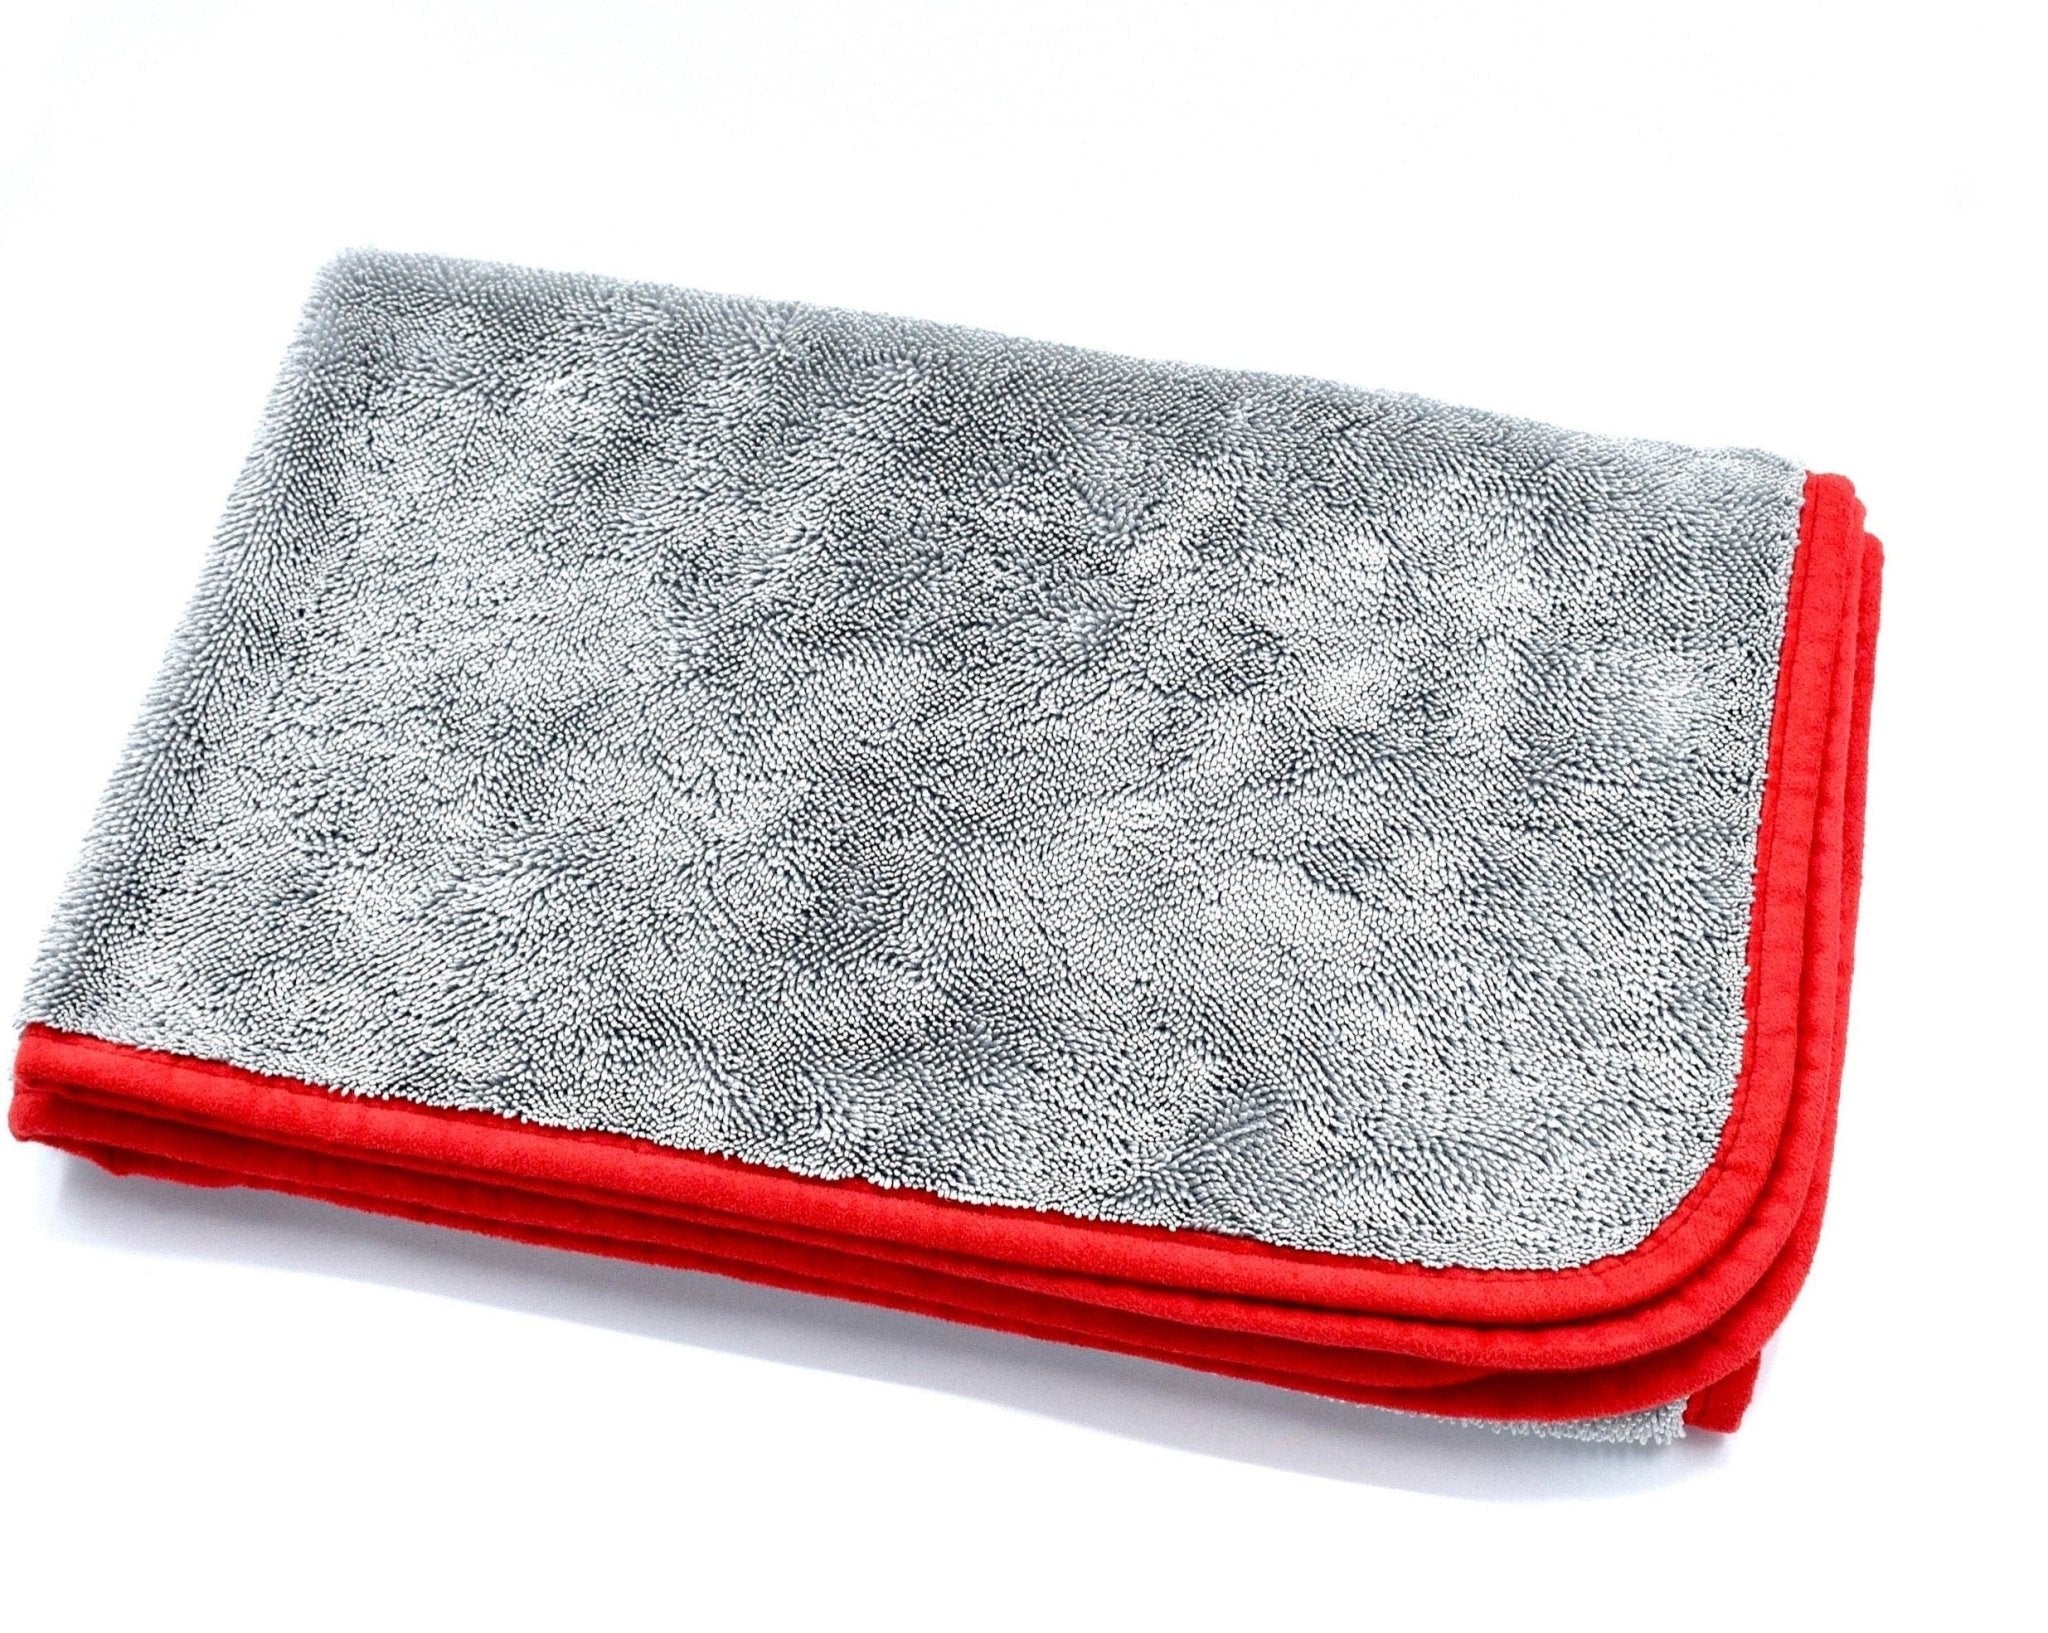 Sniper Microfiber Drying Towel, Car Detailing Towel, Quick & Easy Drying Towel, Made in Korea